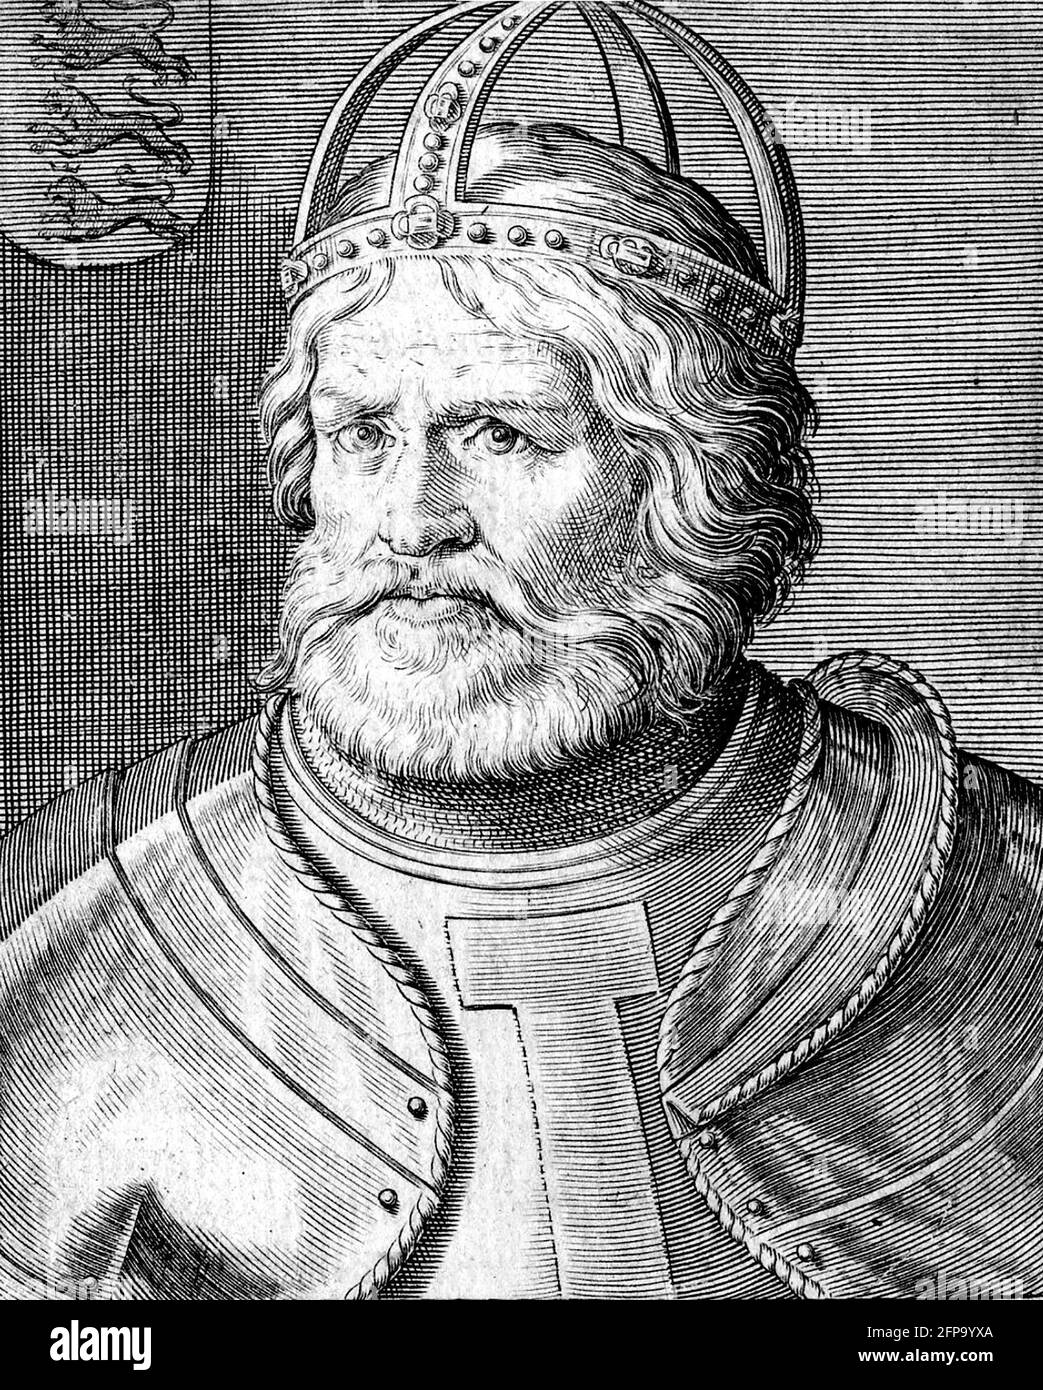 Federico i, Sacro Romano Imperatore. Ritratto di Federico Barbarossa (1122-1190), incisione di Aliprando Caprioli, 1596 Foto Stock